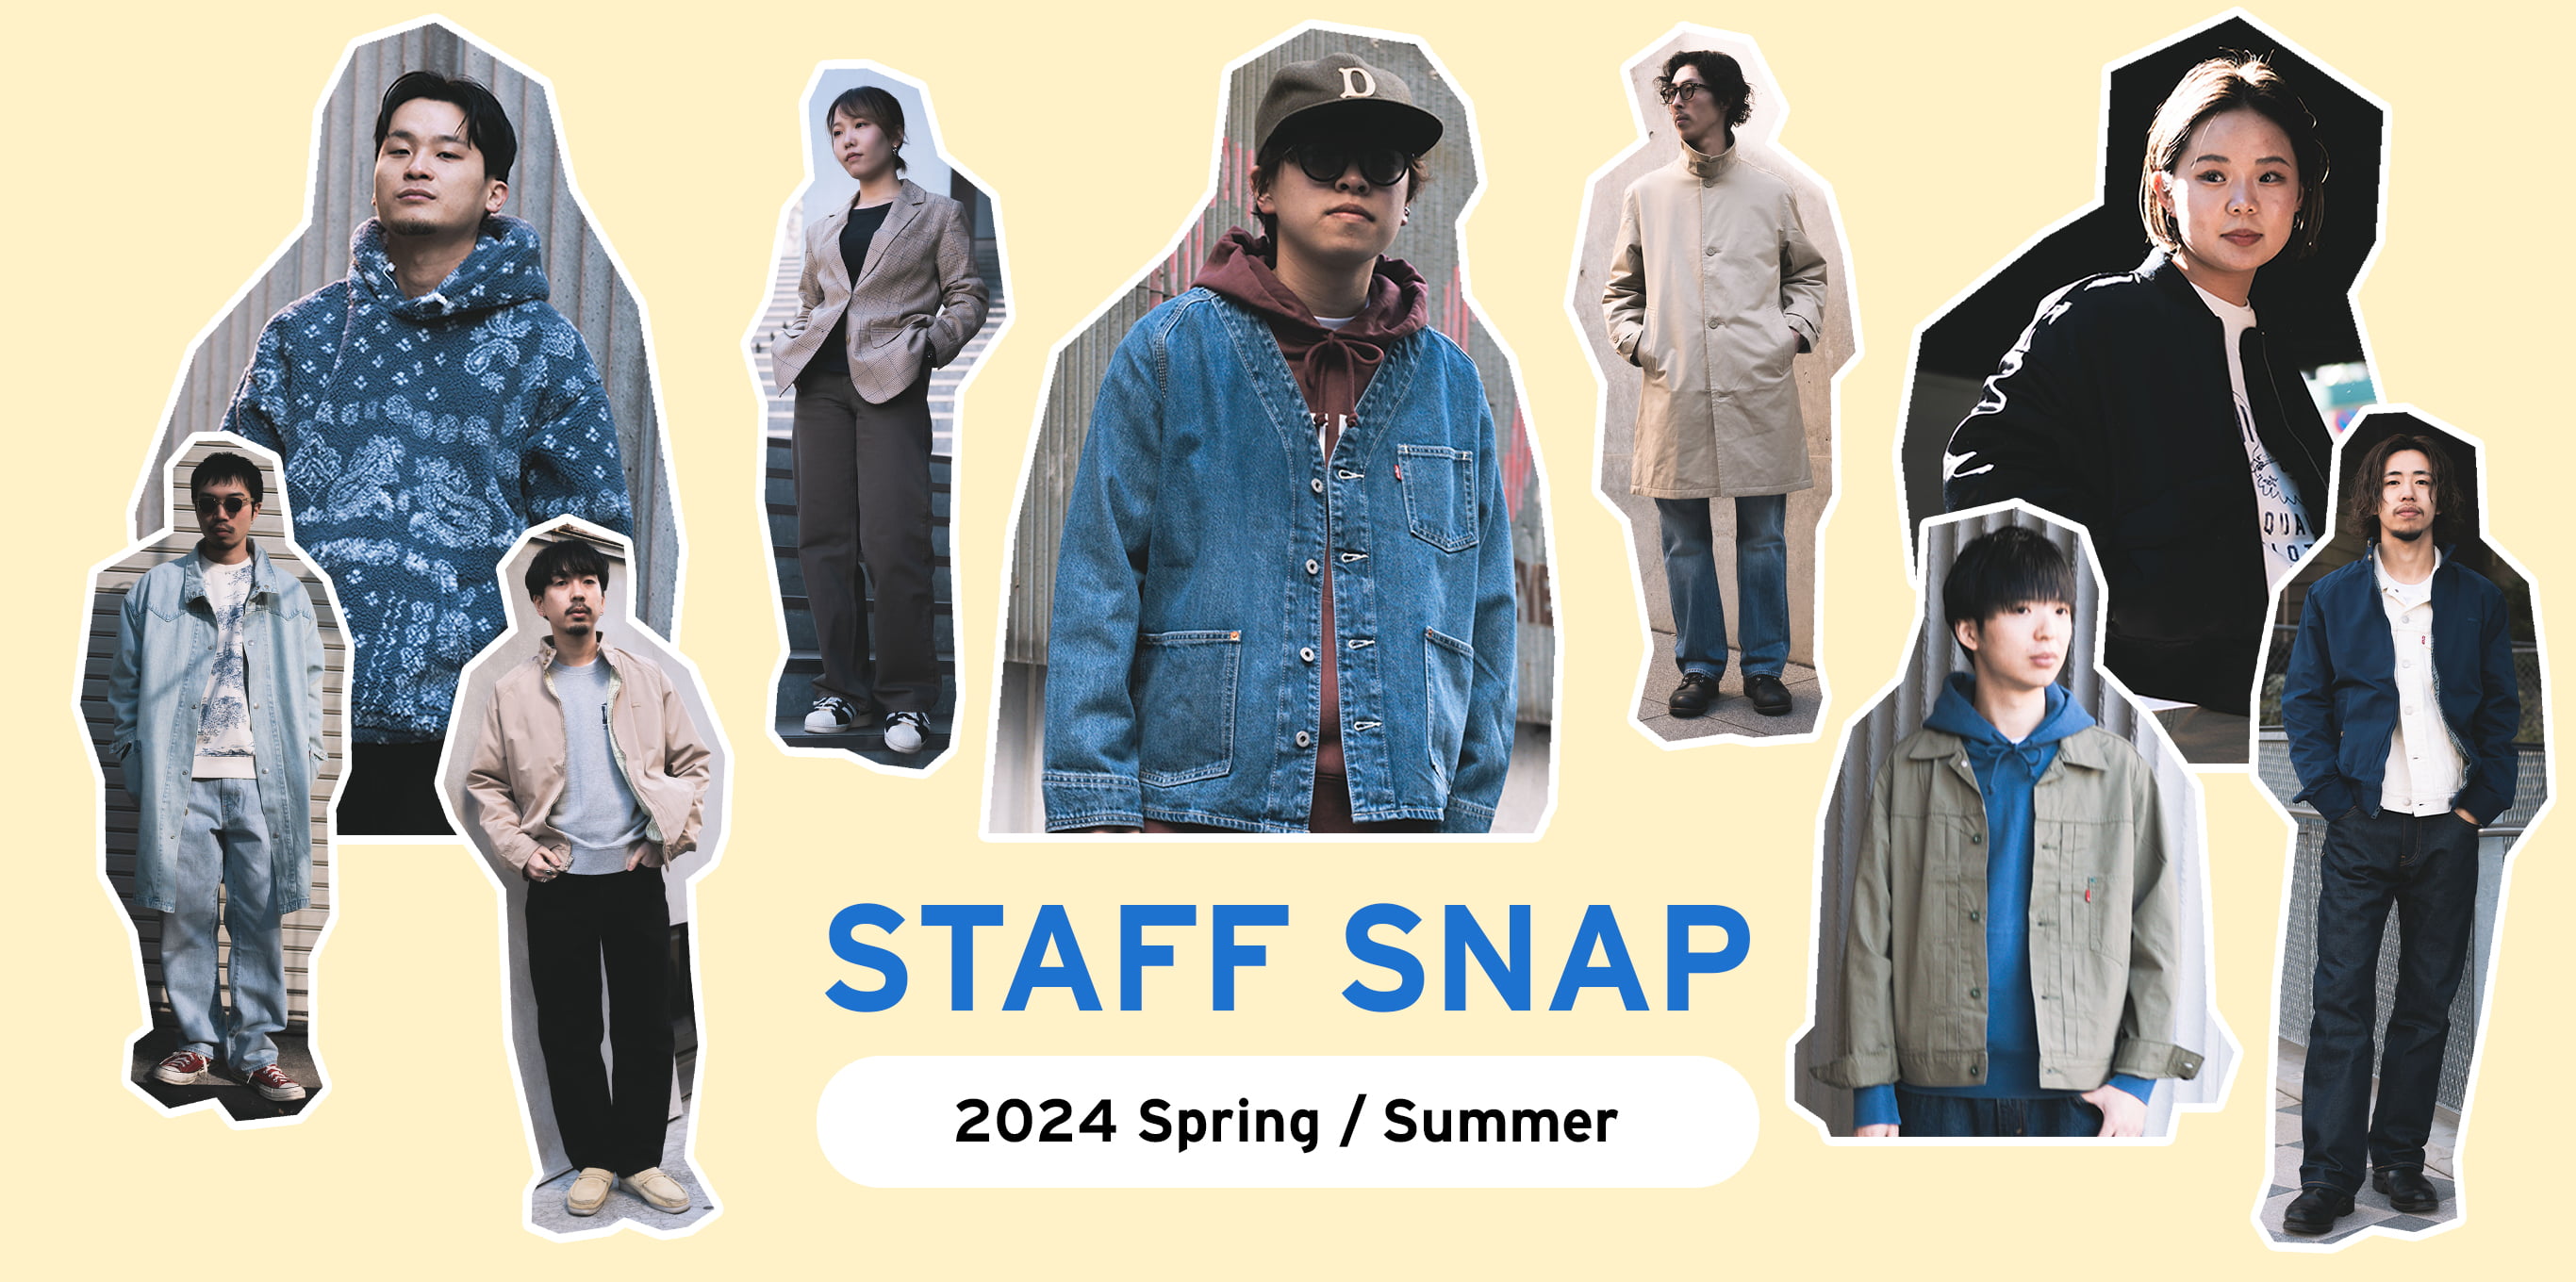 STAFF SNAP 2024 Spring / Summer